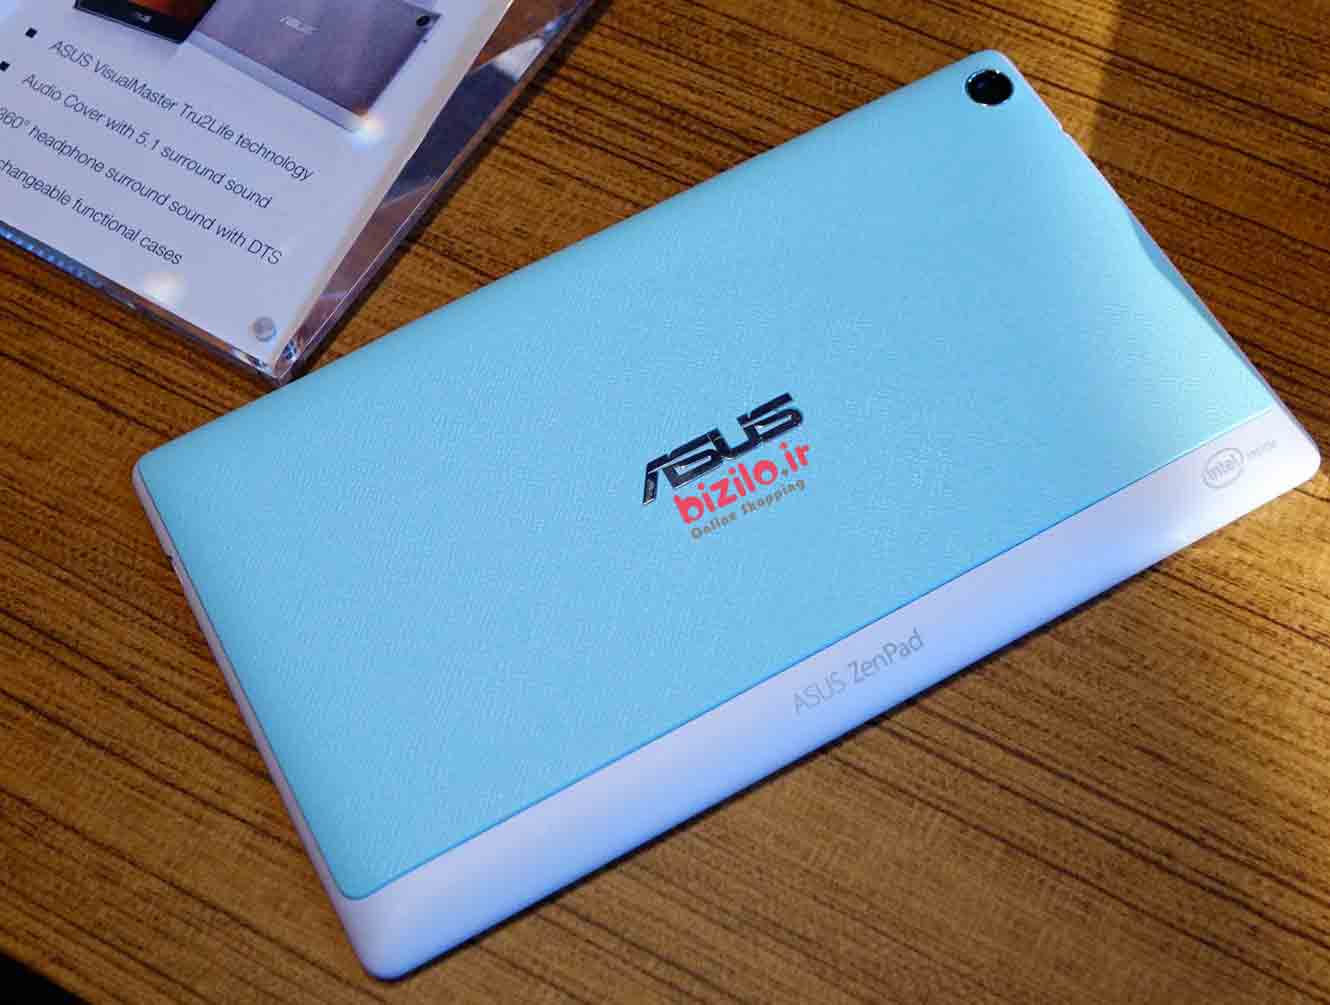 خرید تبلت ASUS ZenPad 7.0از فروشگاه اینترنتی بیزیلو